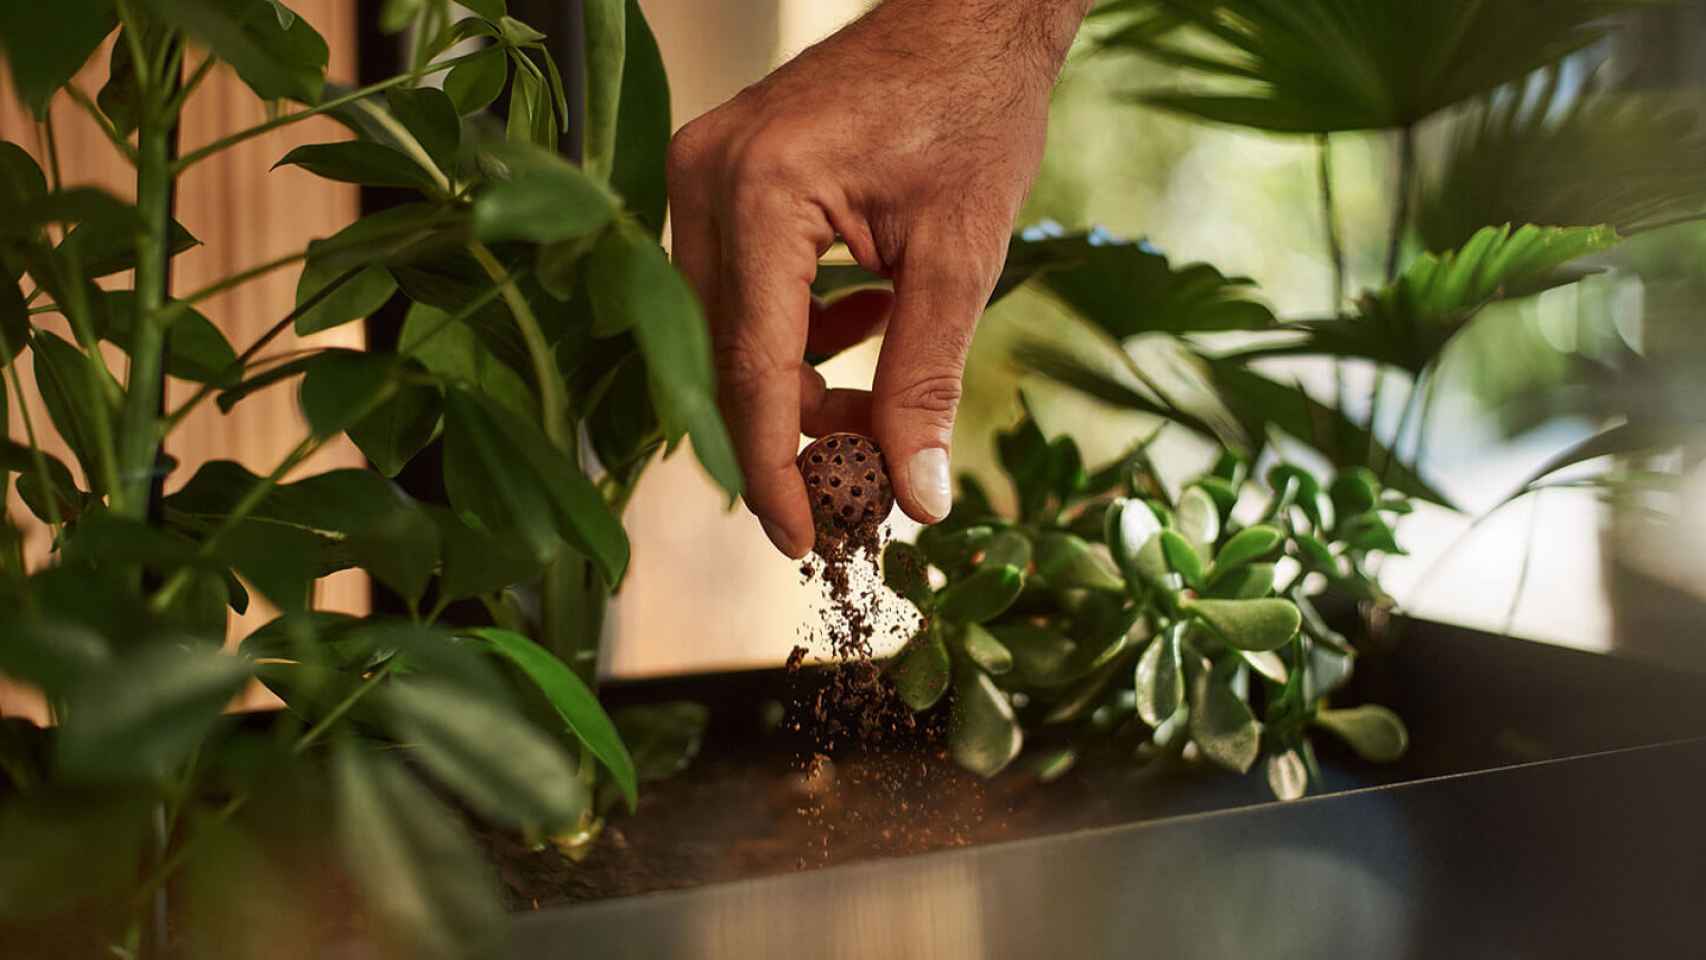 Bola de café para fertilizar las plantas